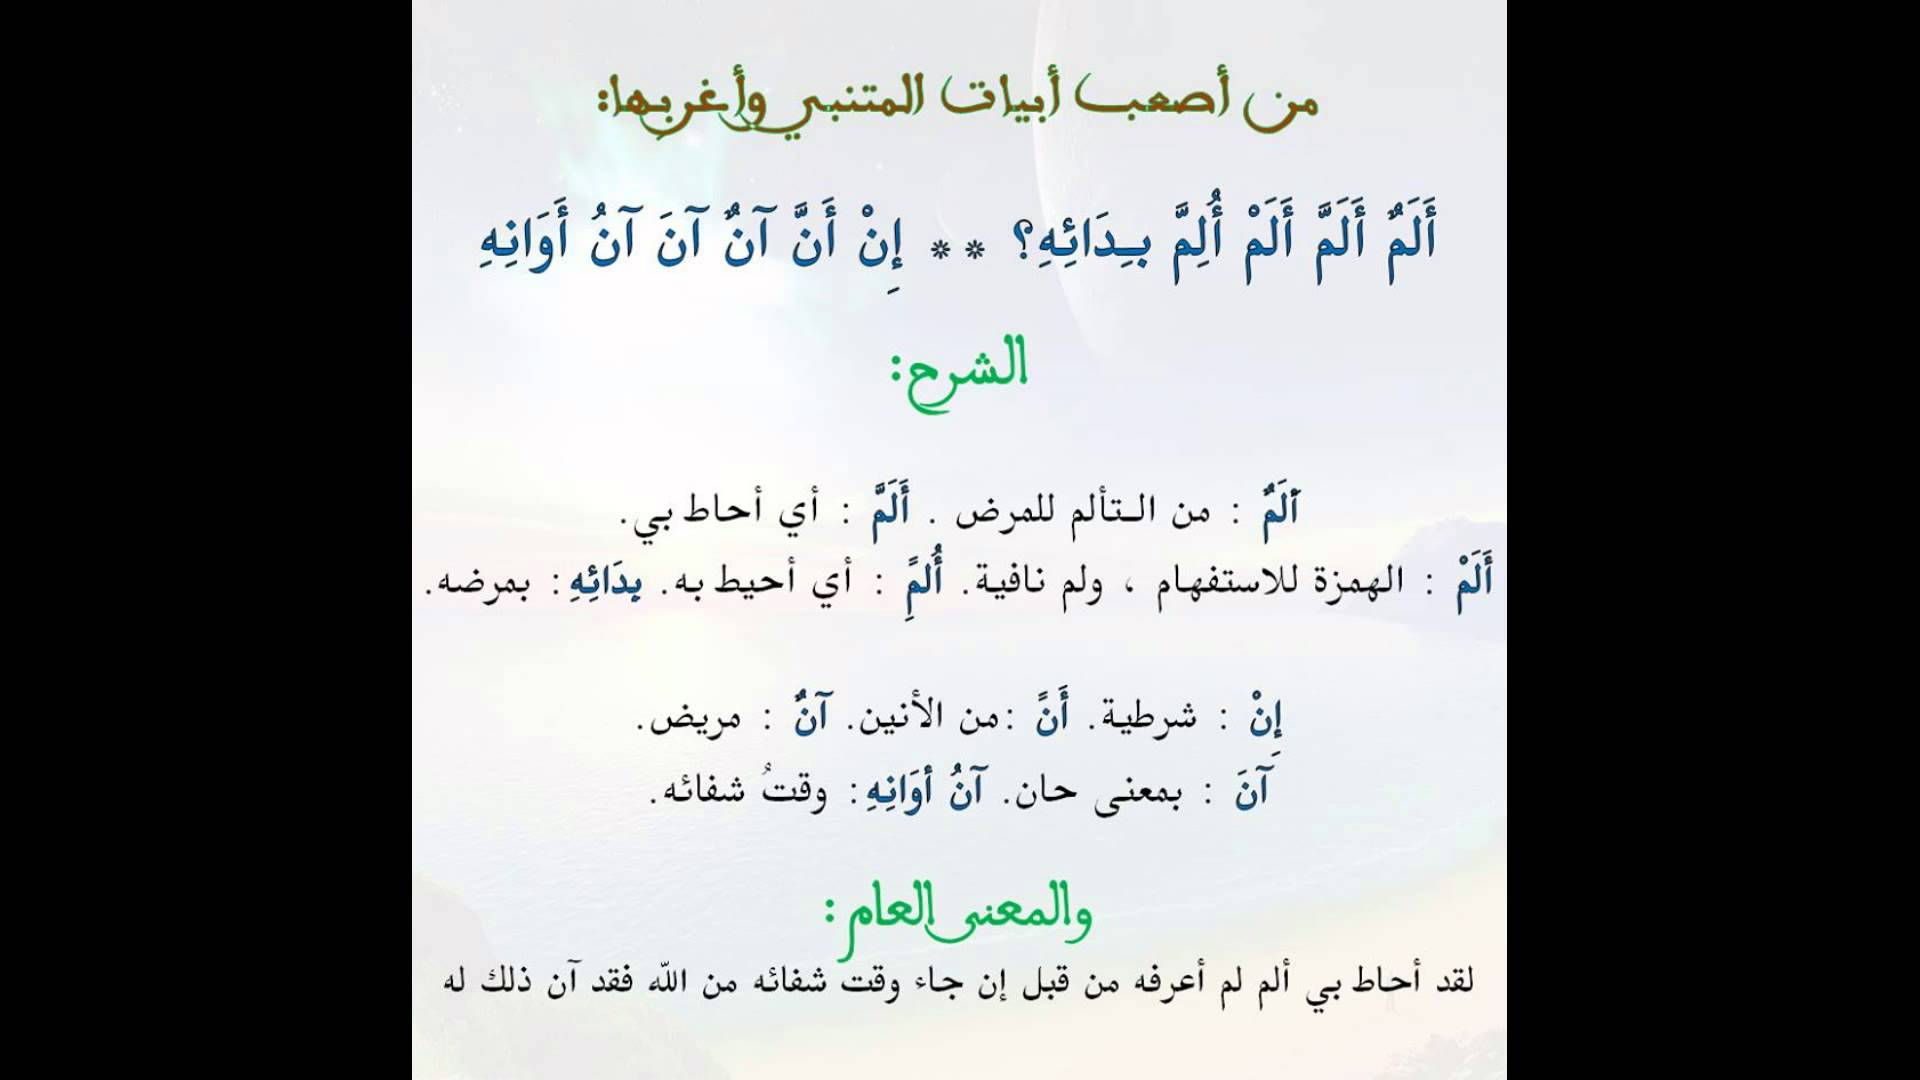 الشعر العربي